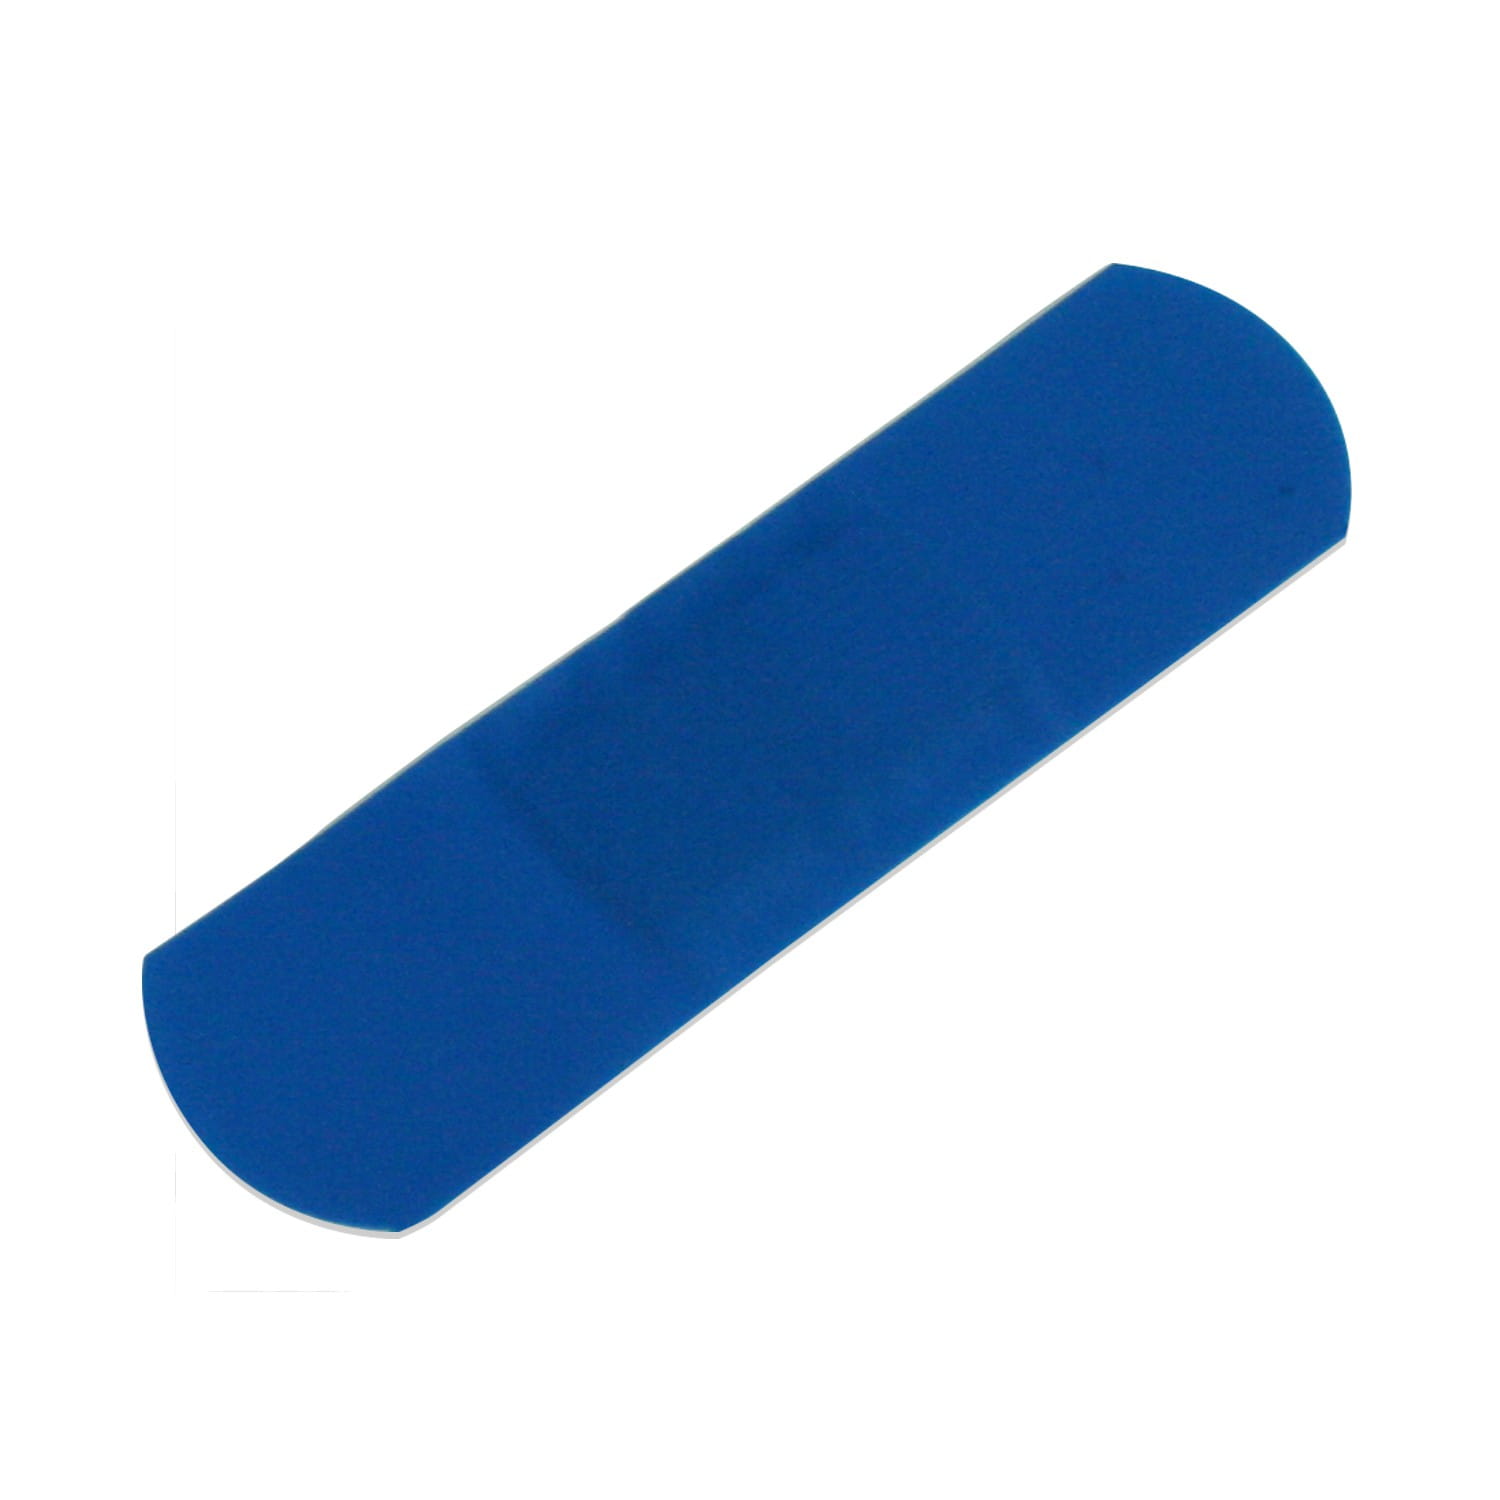 Detectable Pflaster Wundpflaster Blau verschiedene Größen